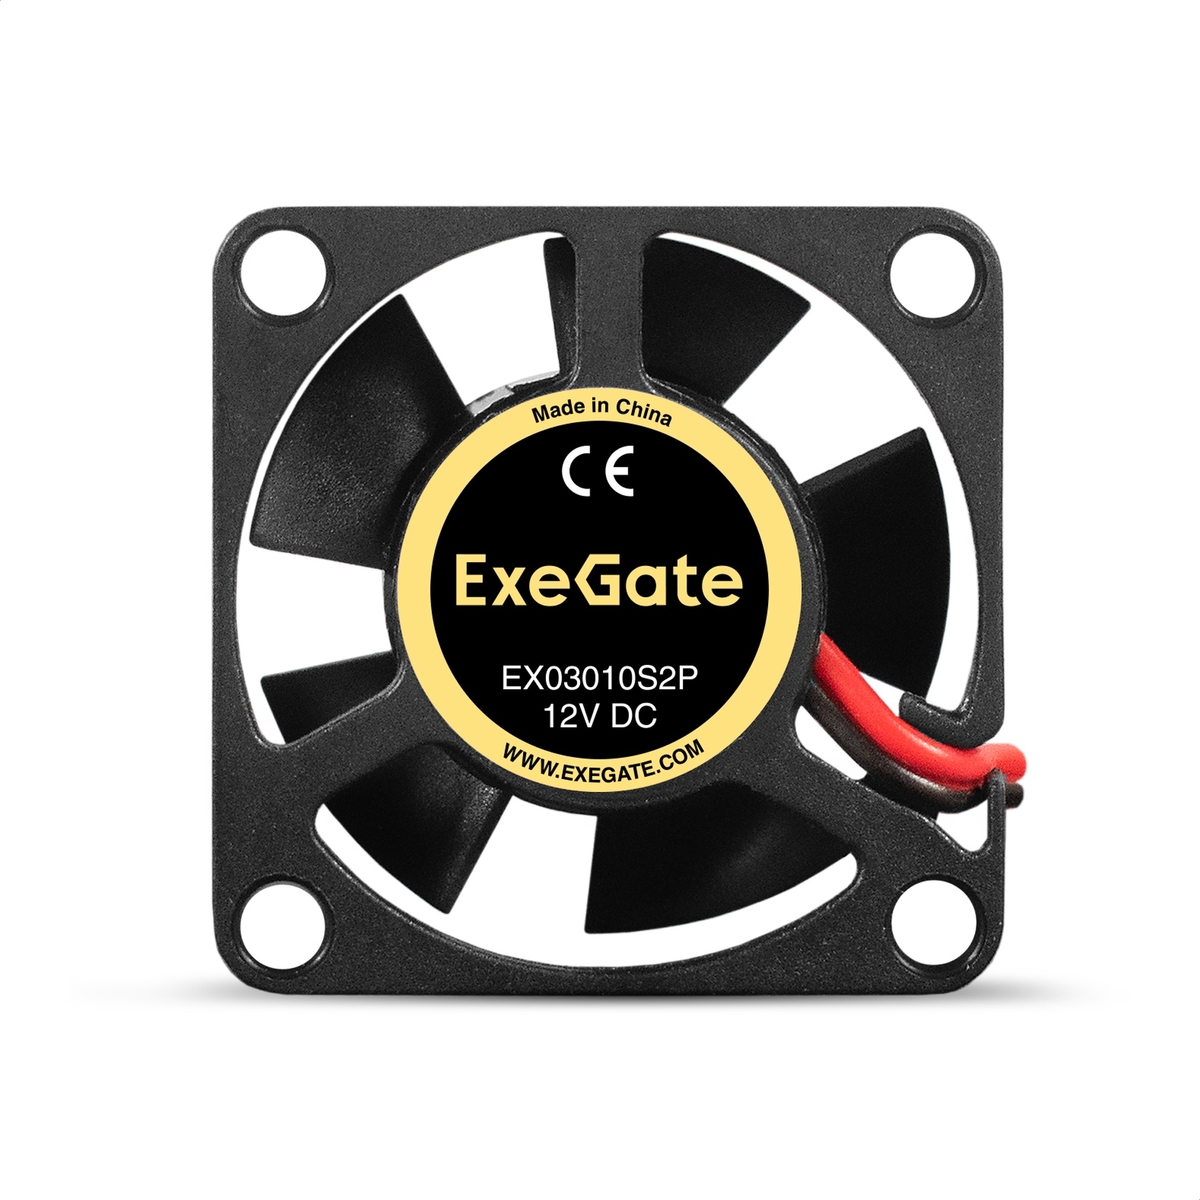  ExeGate EX03010S2P